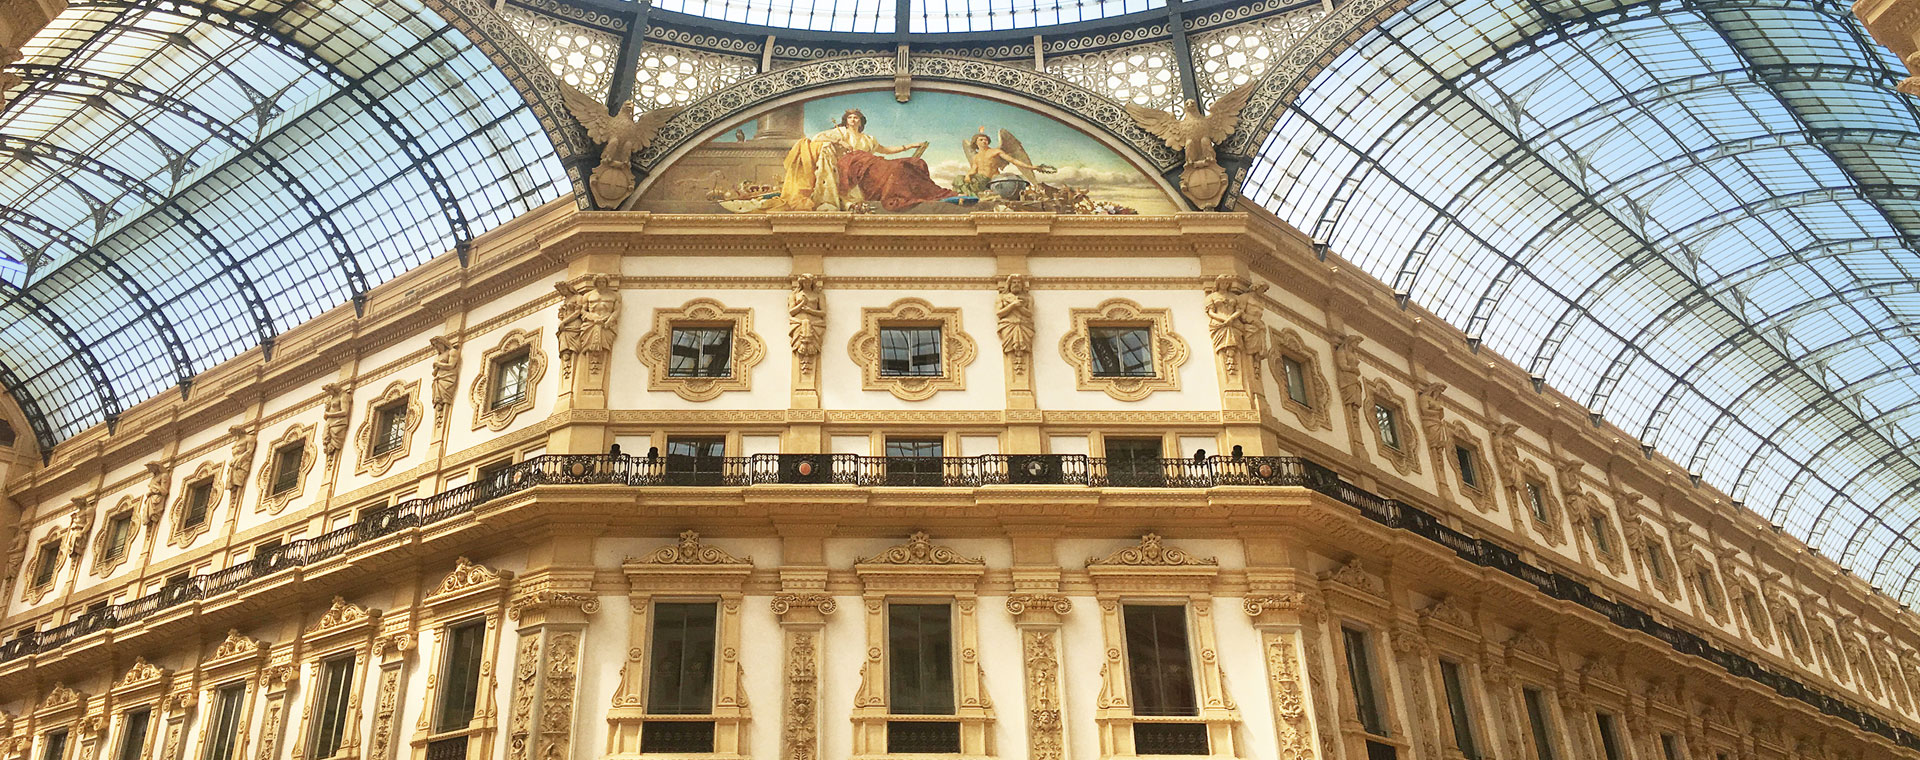 Galleria Vittorio Emanuele Milano city center